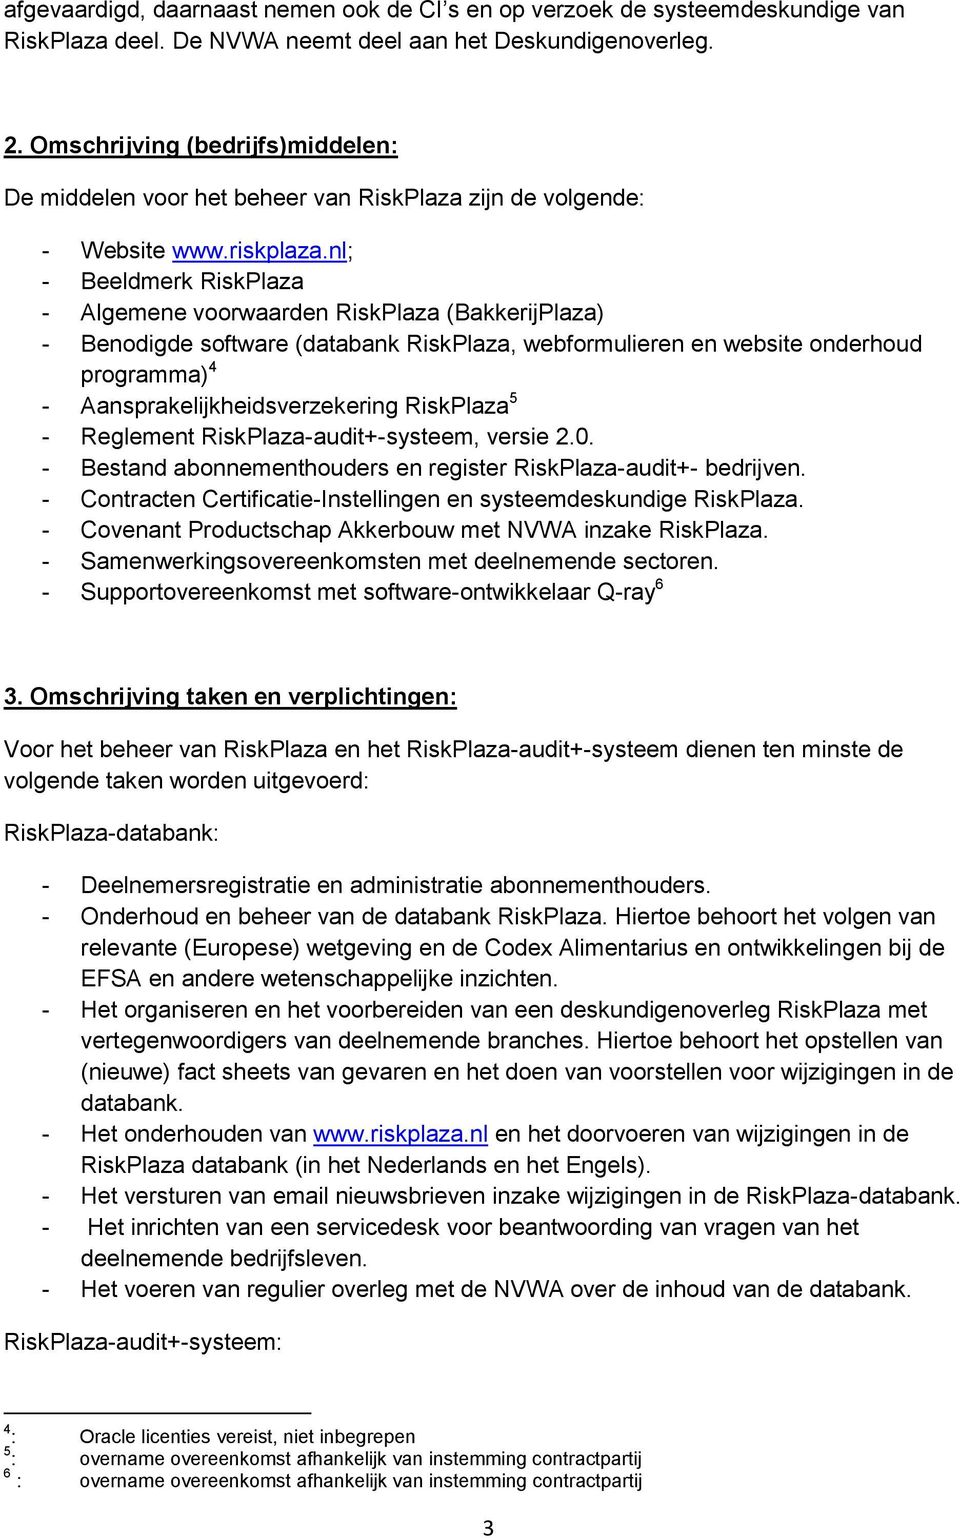 nl; - Beeldmerk RiskPlaza - Algemene voorwaarden RiskPlaza (BakkerijPlaza) - Benodigde software (databank RiskPlaza, webformulieren en website onderhoud programma) 4 - Aansprakelijkheidsverzekering